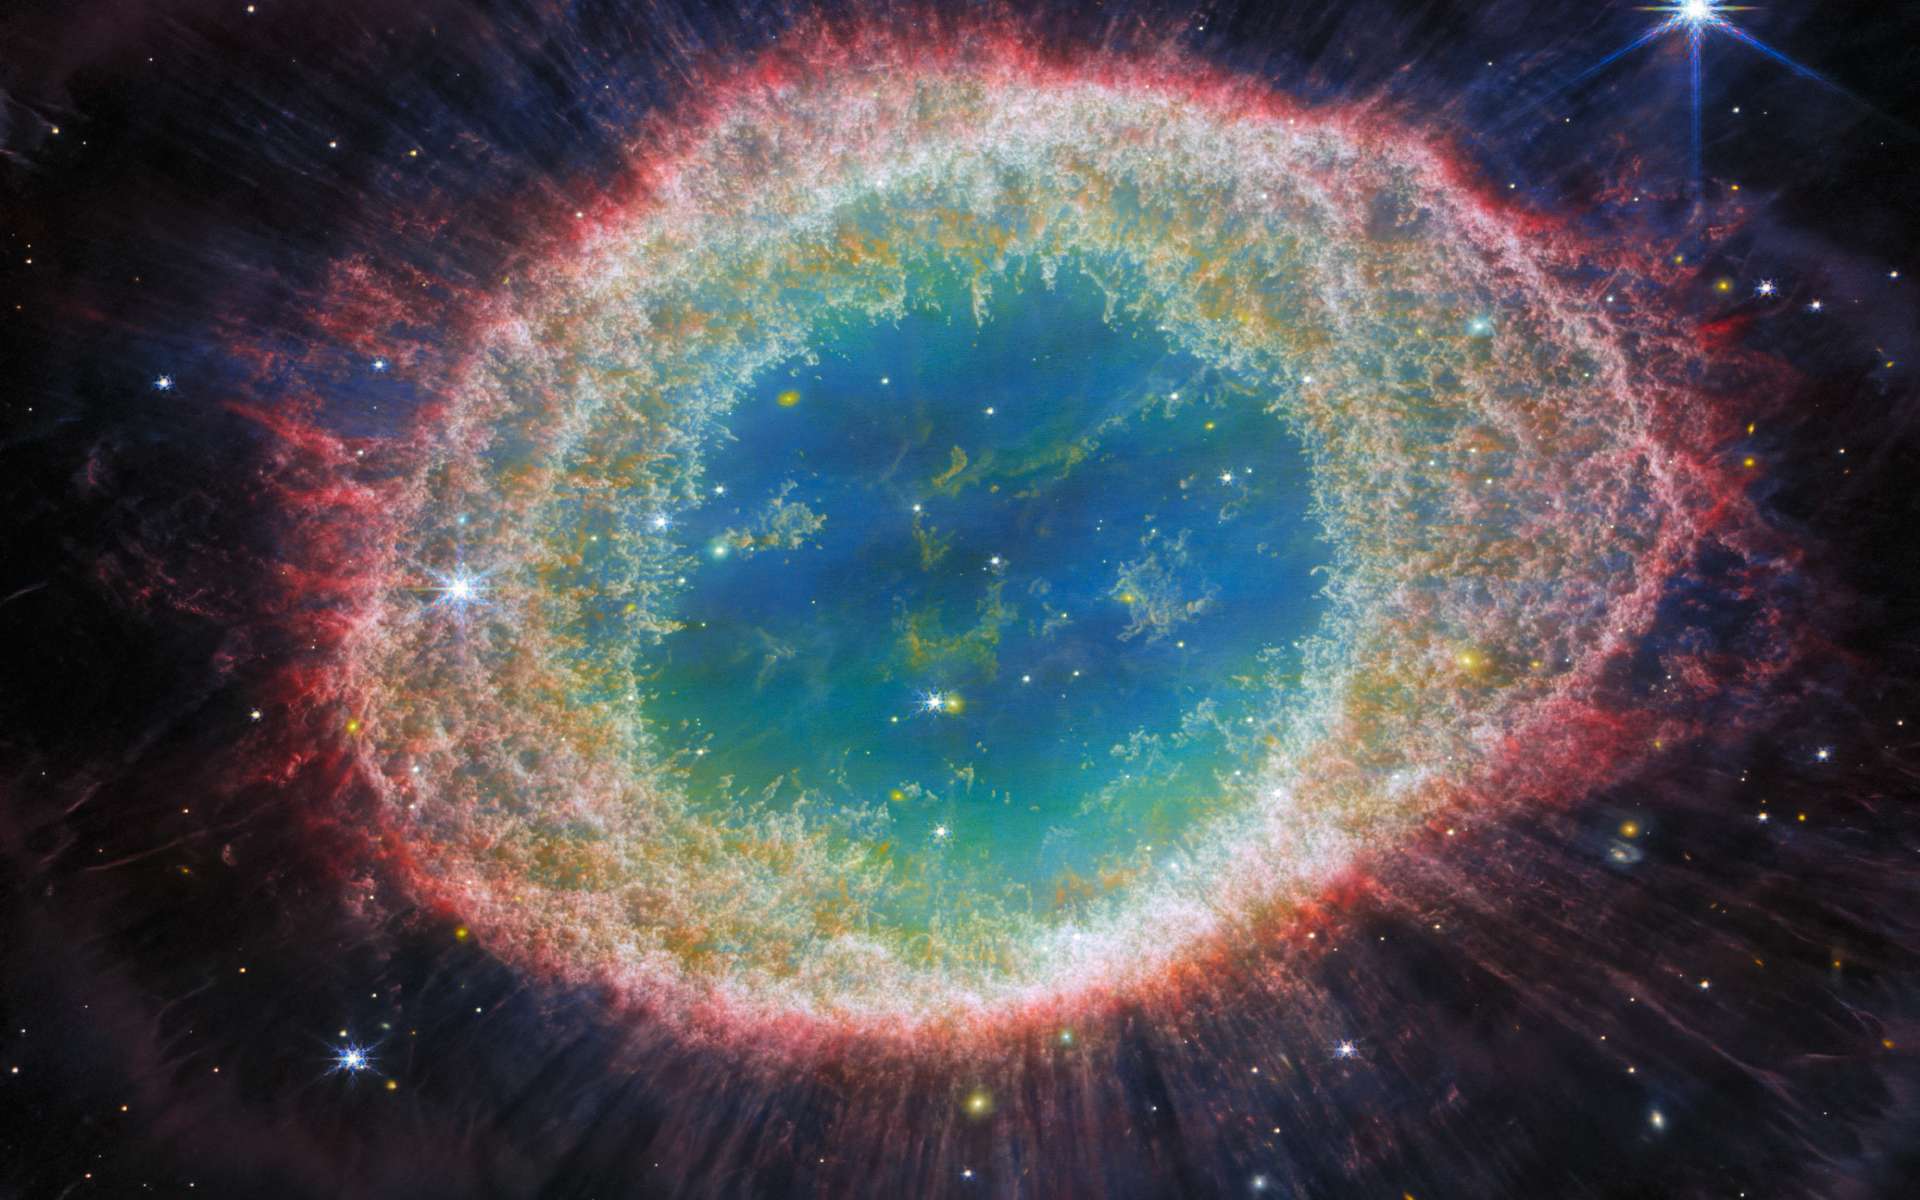 Le télescope James-Webb révèle la beauté cachée de la nébuleuse de la Lyre